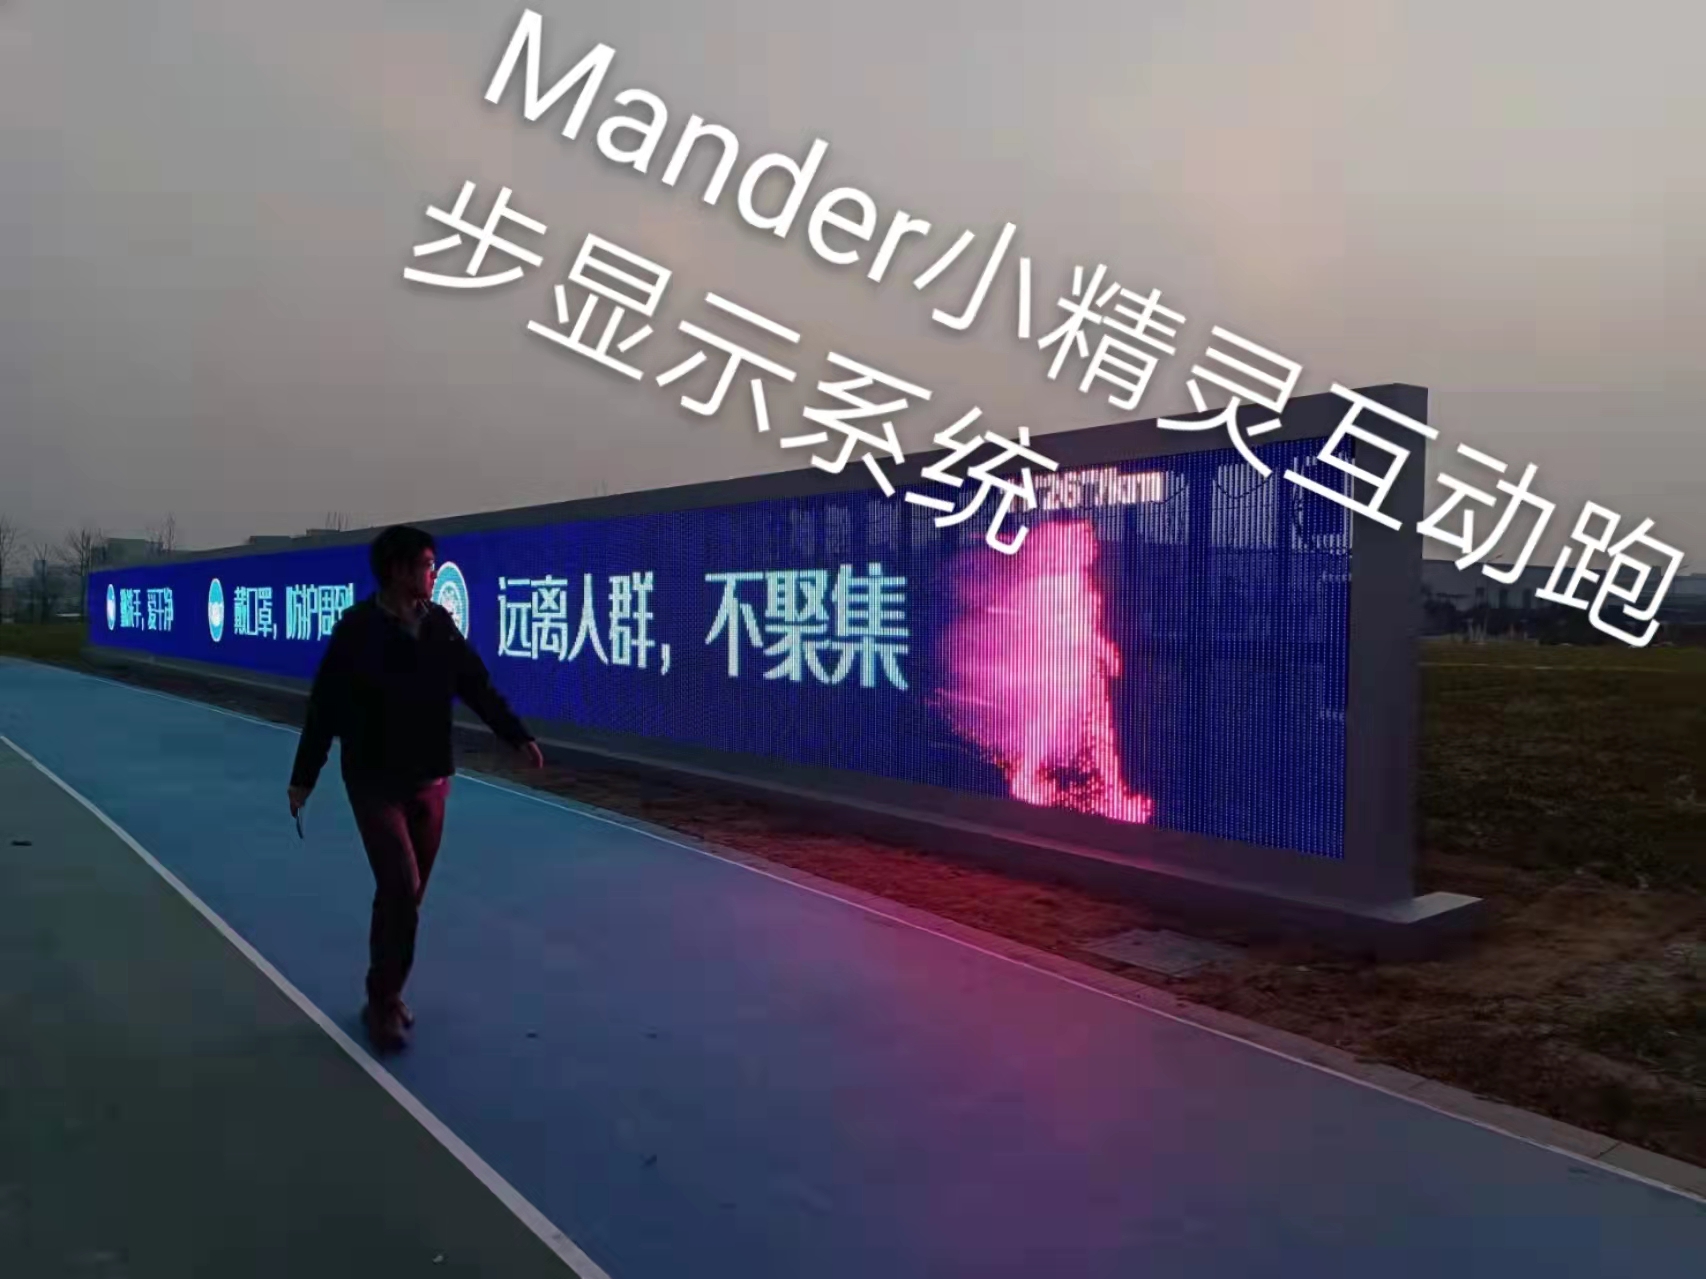 智慧公园智慧步道Mander小精灵跑步墙互动系统